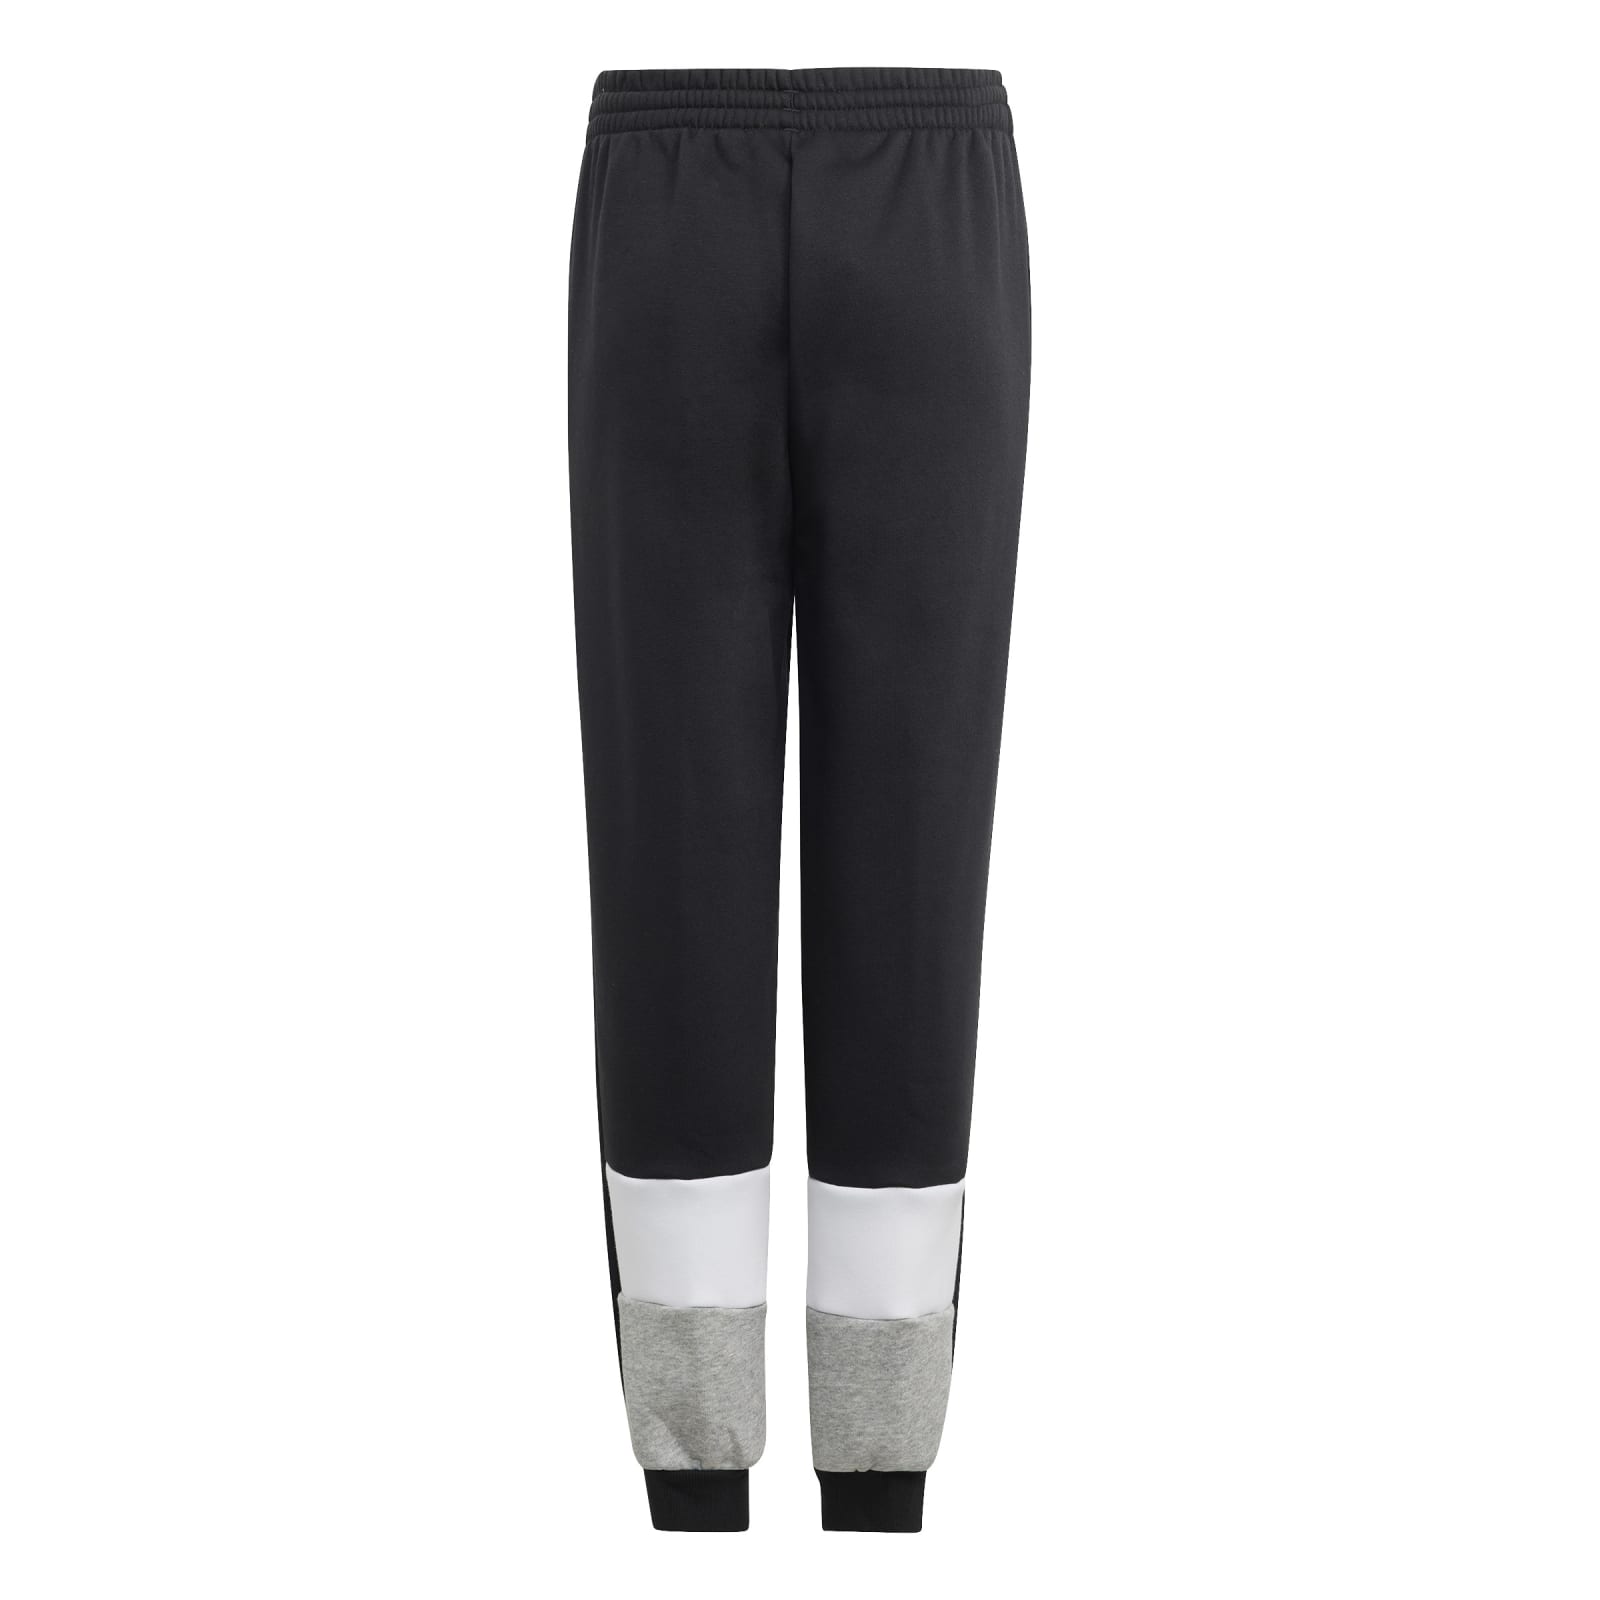 adidas Trainingsanzug online Fleece Colourblock schwarz/grau Jungen (Baumwollmix) bestellen